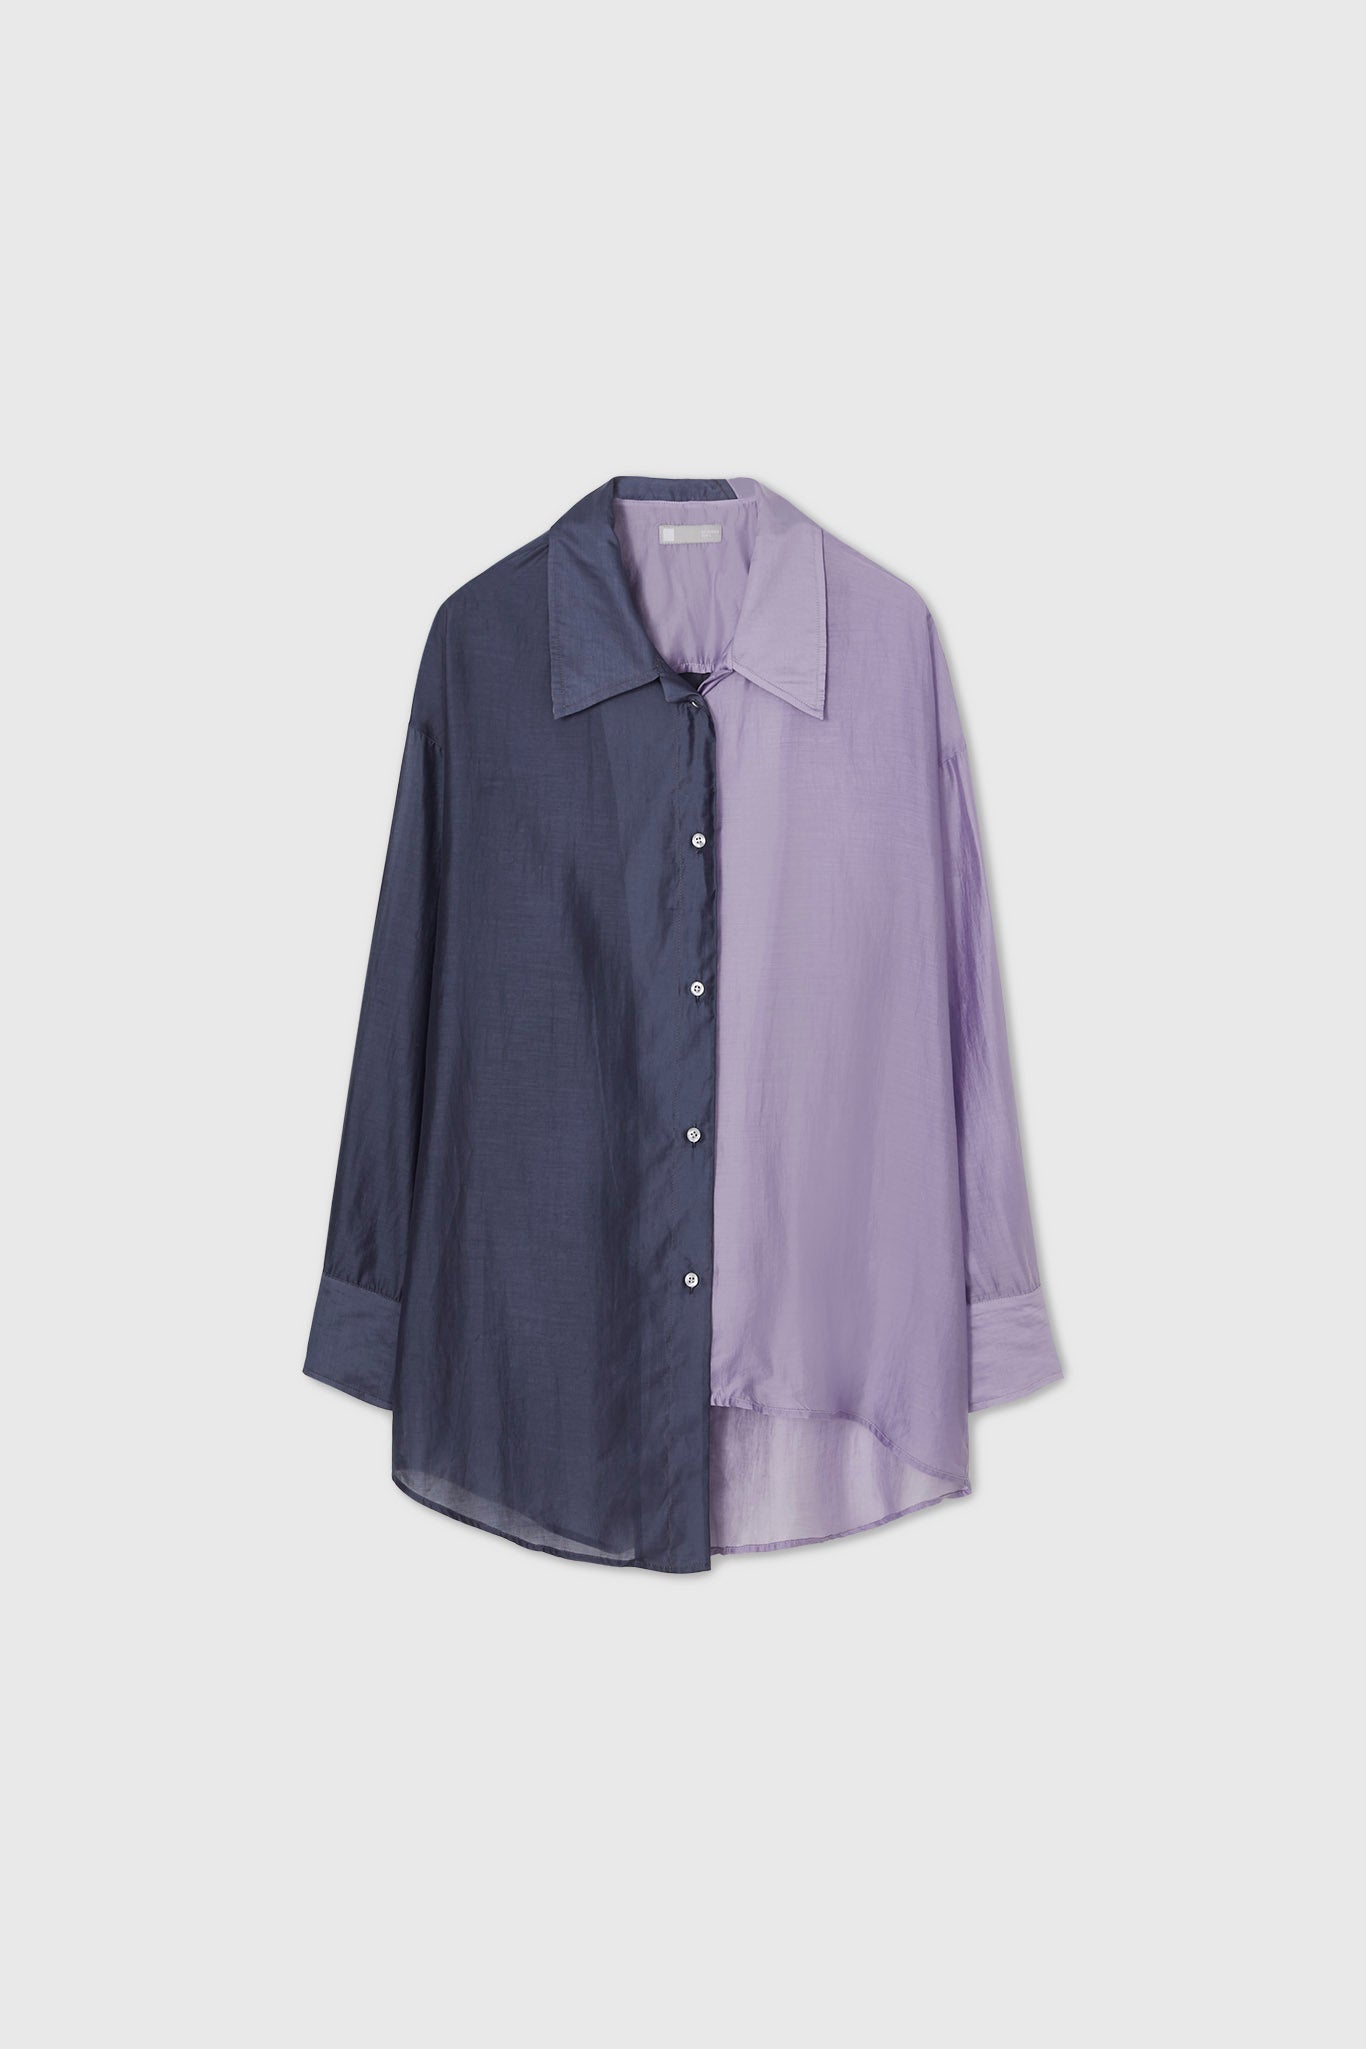 Bicolor asymmetric sheer shirt